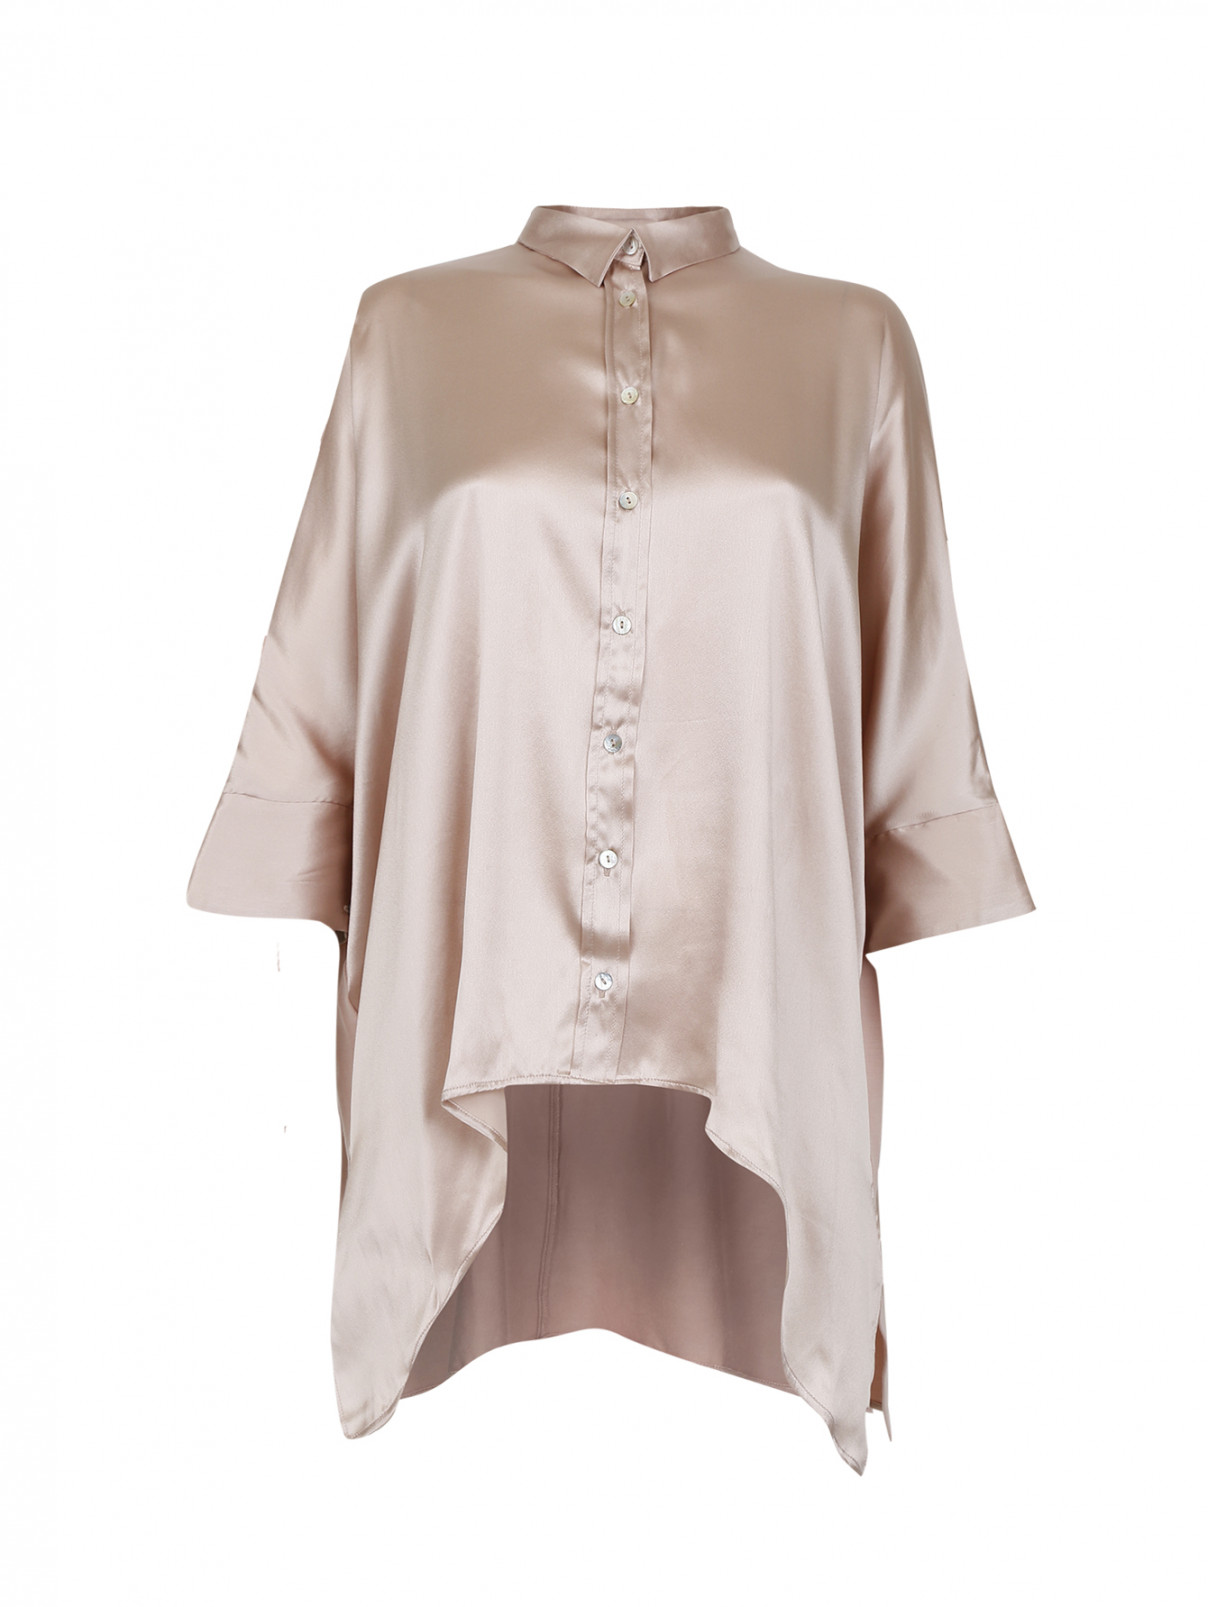 Шелковая рубашка свободного фасона Valery Prestige  –  Общий вид  – Цвет:  Розовый